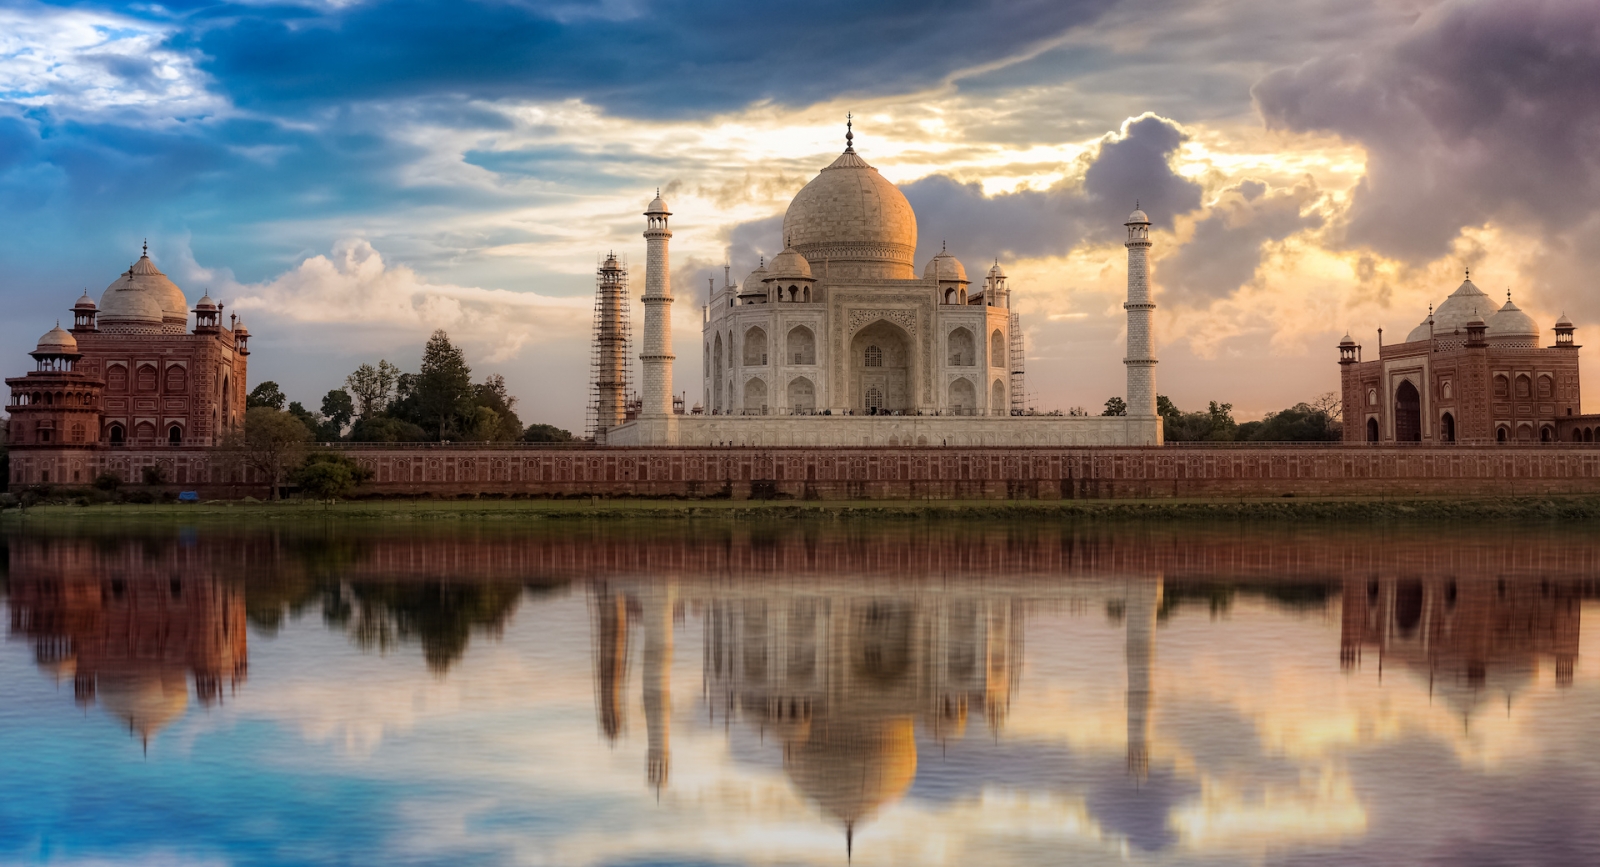 Taj Mahal vista al tramonto da Mehtab Bagh sulle rive del fiume Yamuna.  Taj Mahal è un mausoleo in marmo bianco designato come sito del patrimonio mondiale dell'UNESCO ad Agra